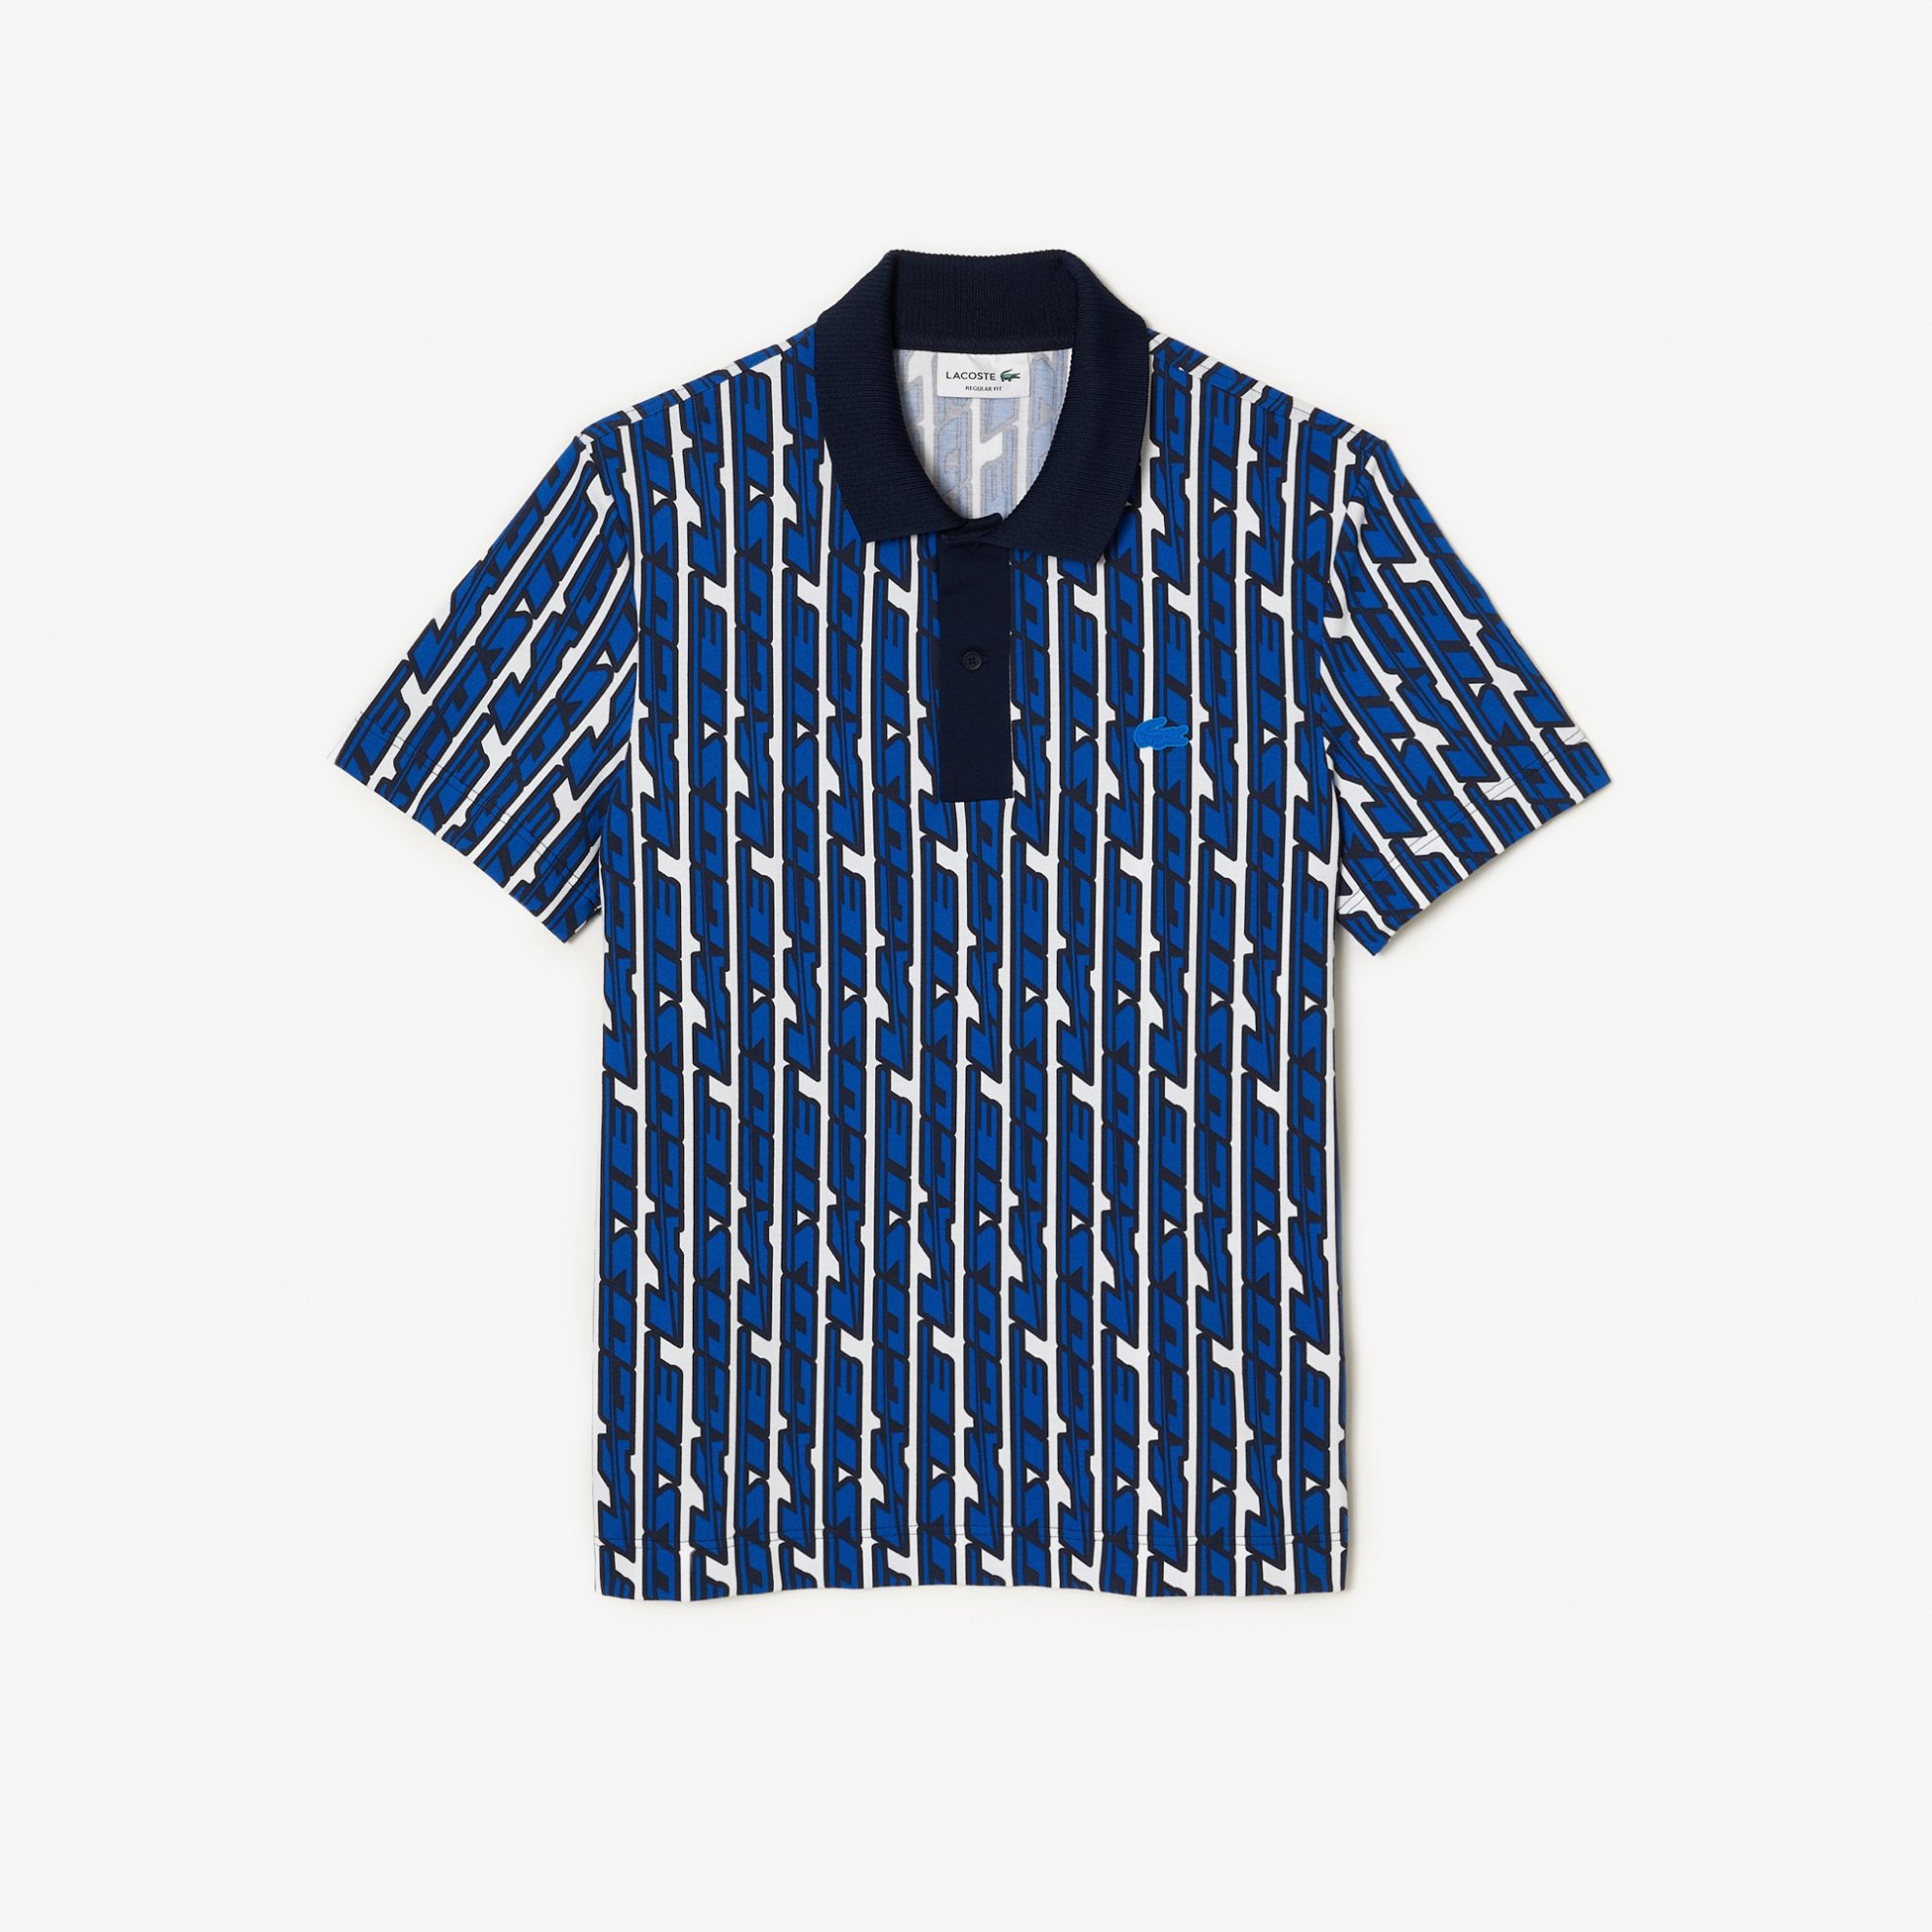 Εικόνα της Ανδρική Lacoste Movement Polo Μπλούζα Two-Tone Printed